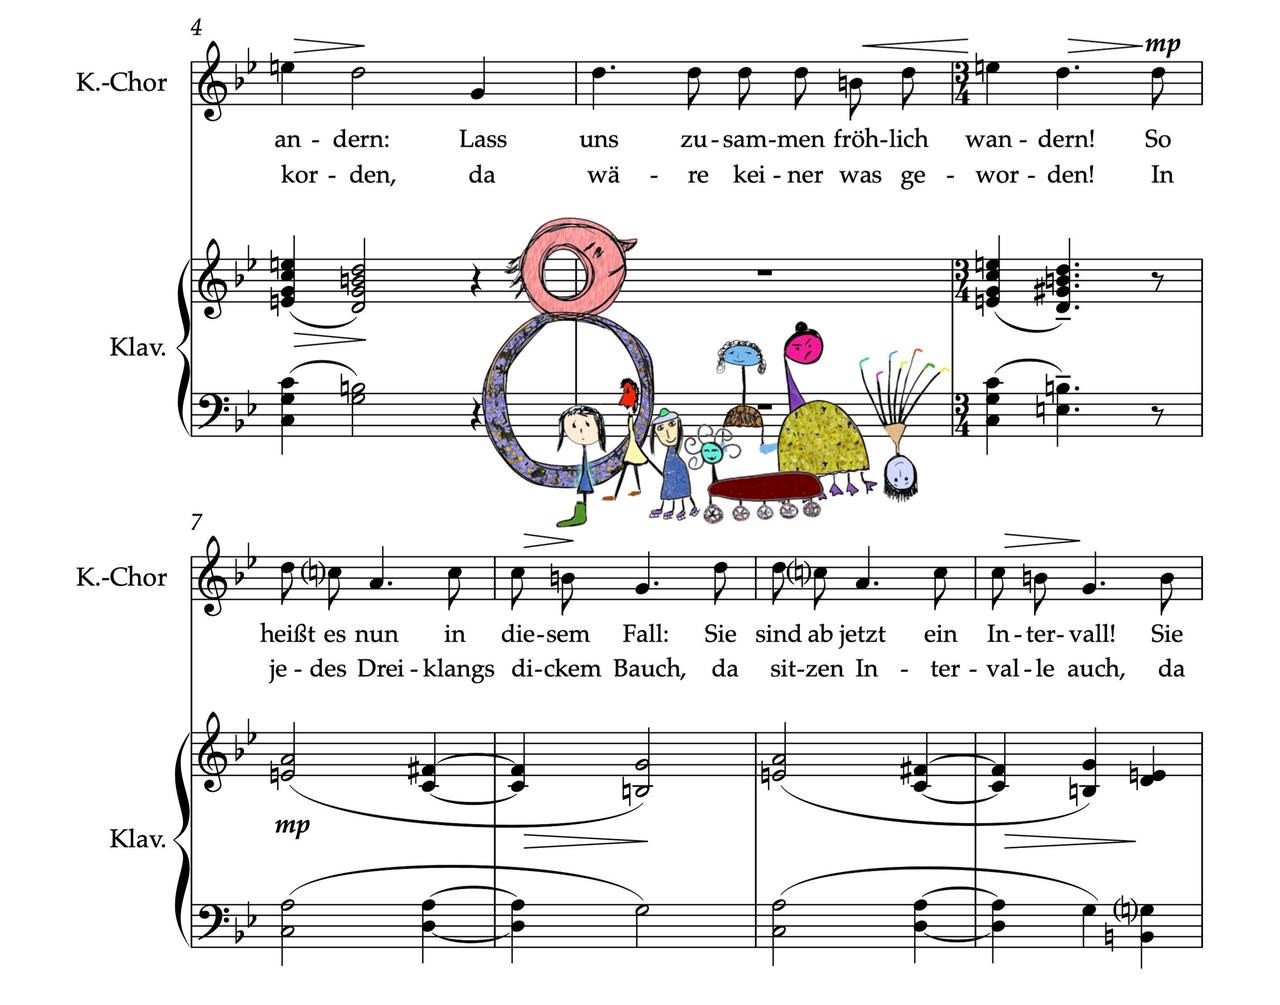 Auf einem Notenblatt sind Zeichnungen von fantasievollen Figuren eingebunden, die das Lied singen, von dem sie umgeben sind. 